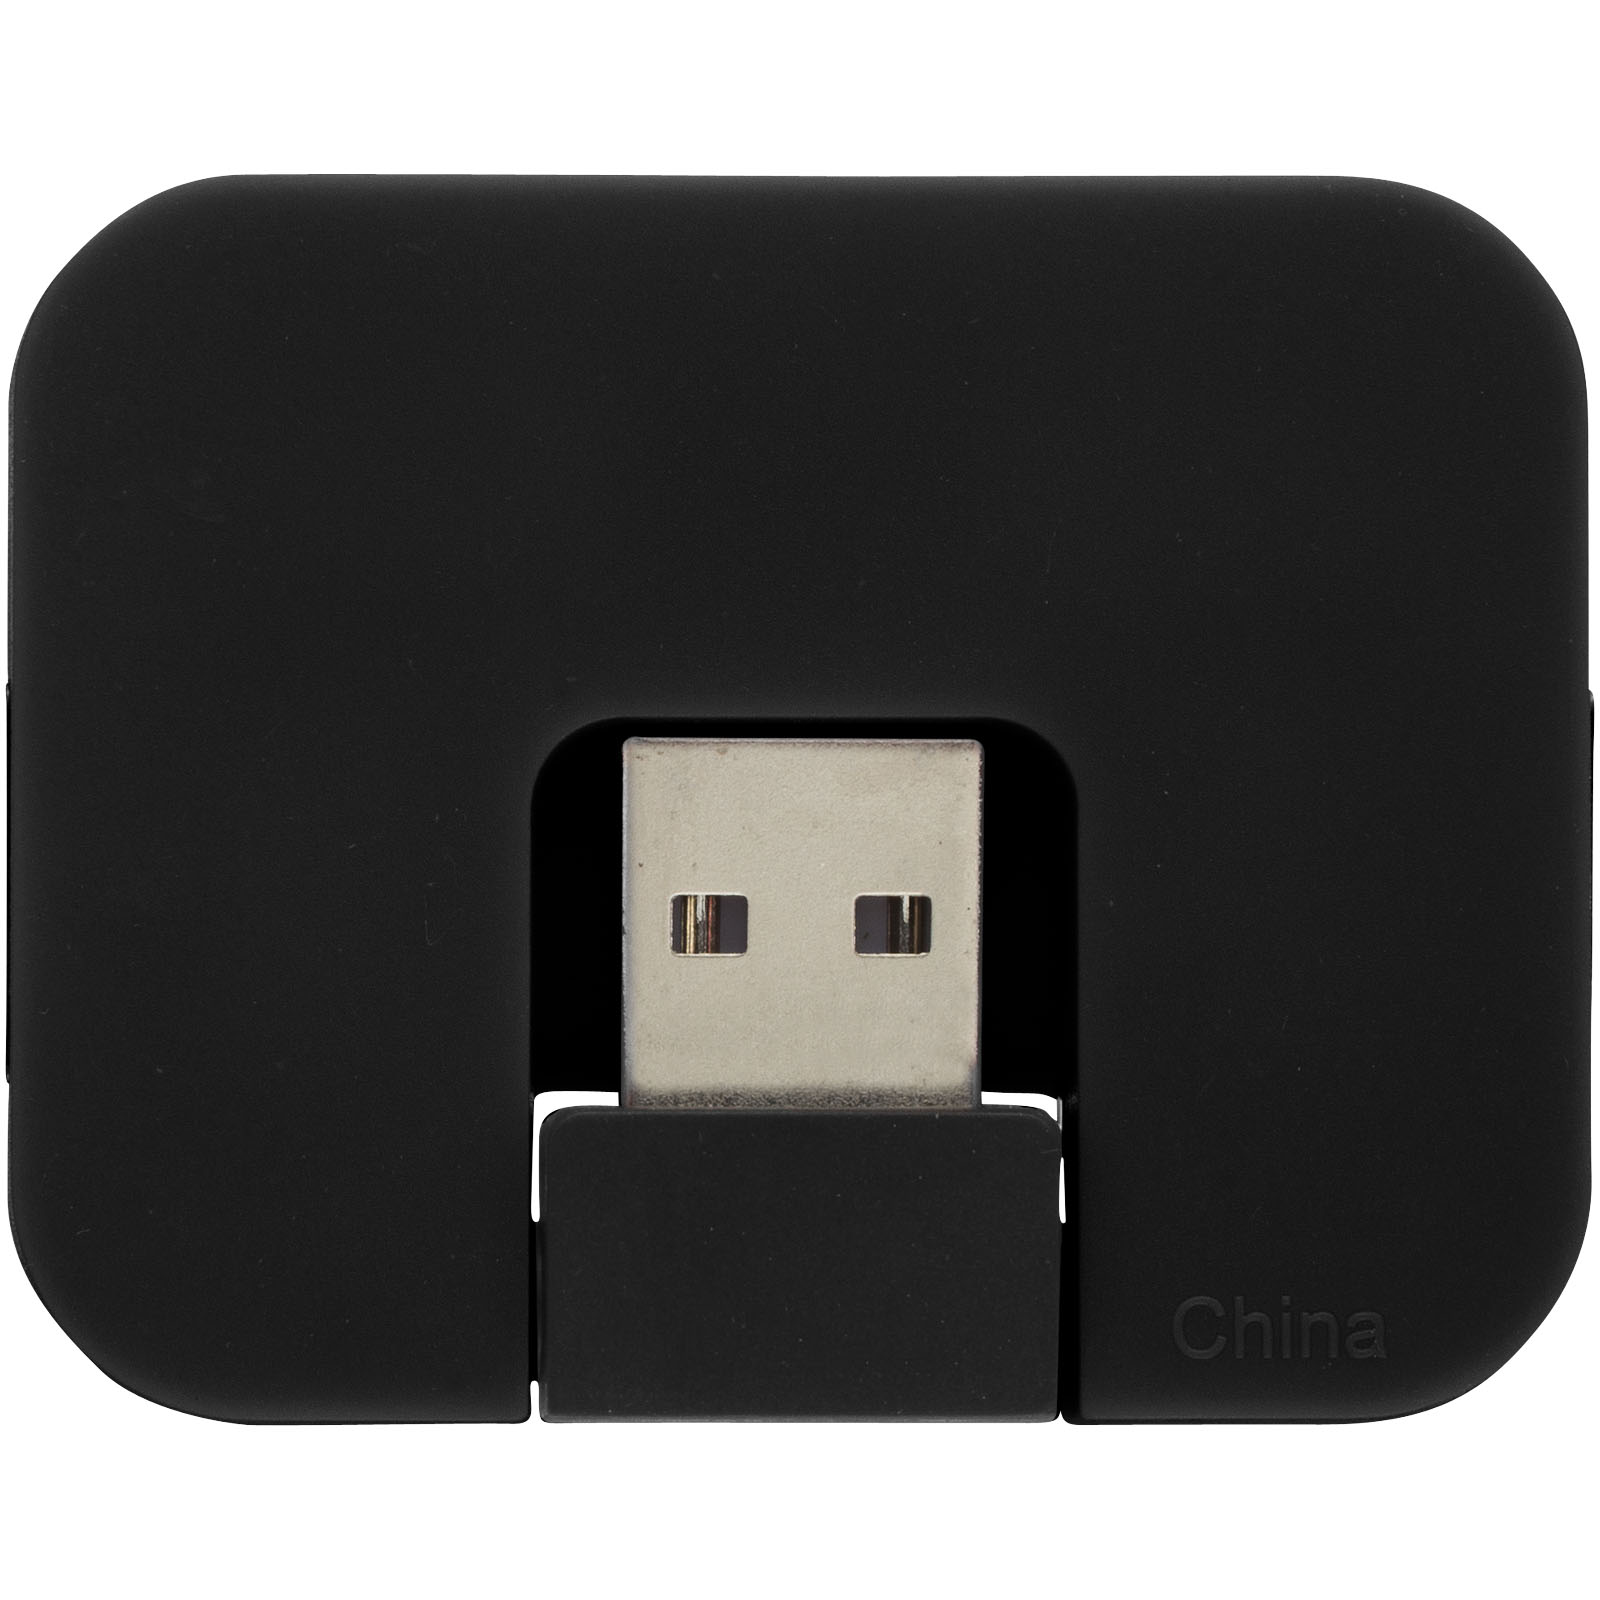 Hubs USB publicitaires - Hub USB 4 ports Gaia - 2